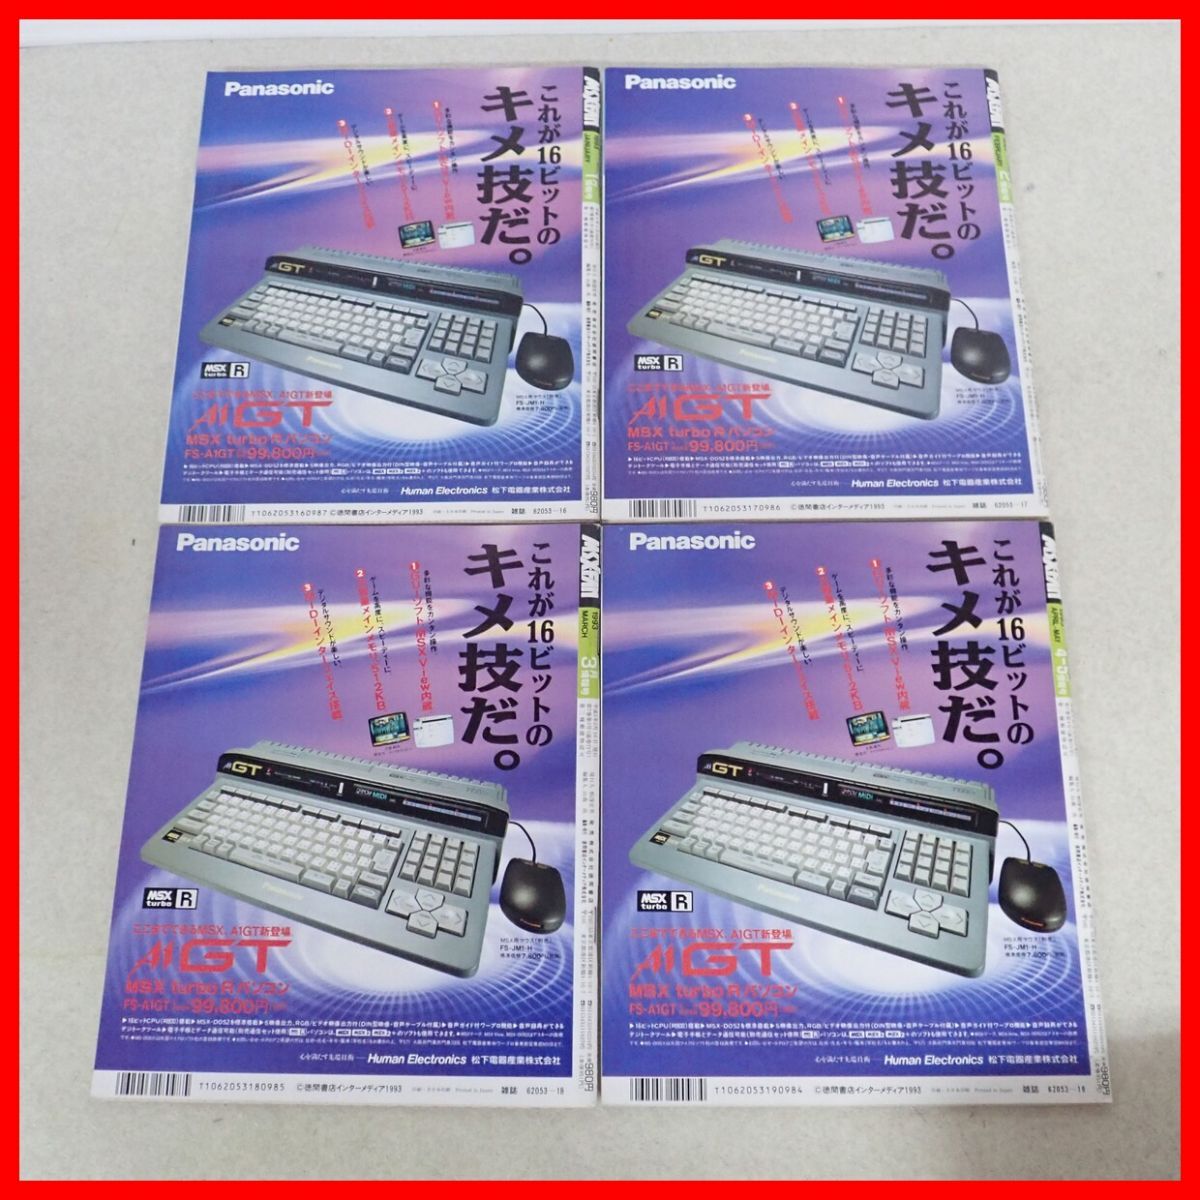 * журнал MSX*FAN/ M es X * вентилятор 1993~95 год совместно много комплект добродетель промежуток книжный магазин [20